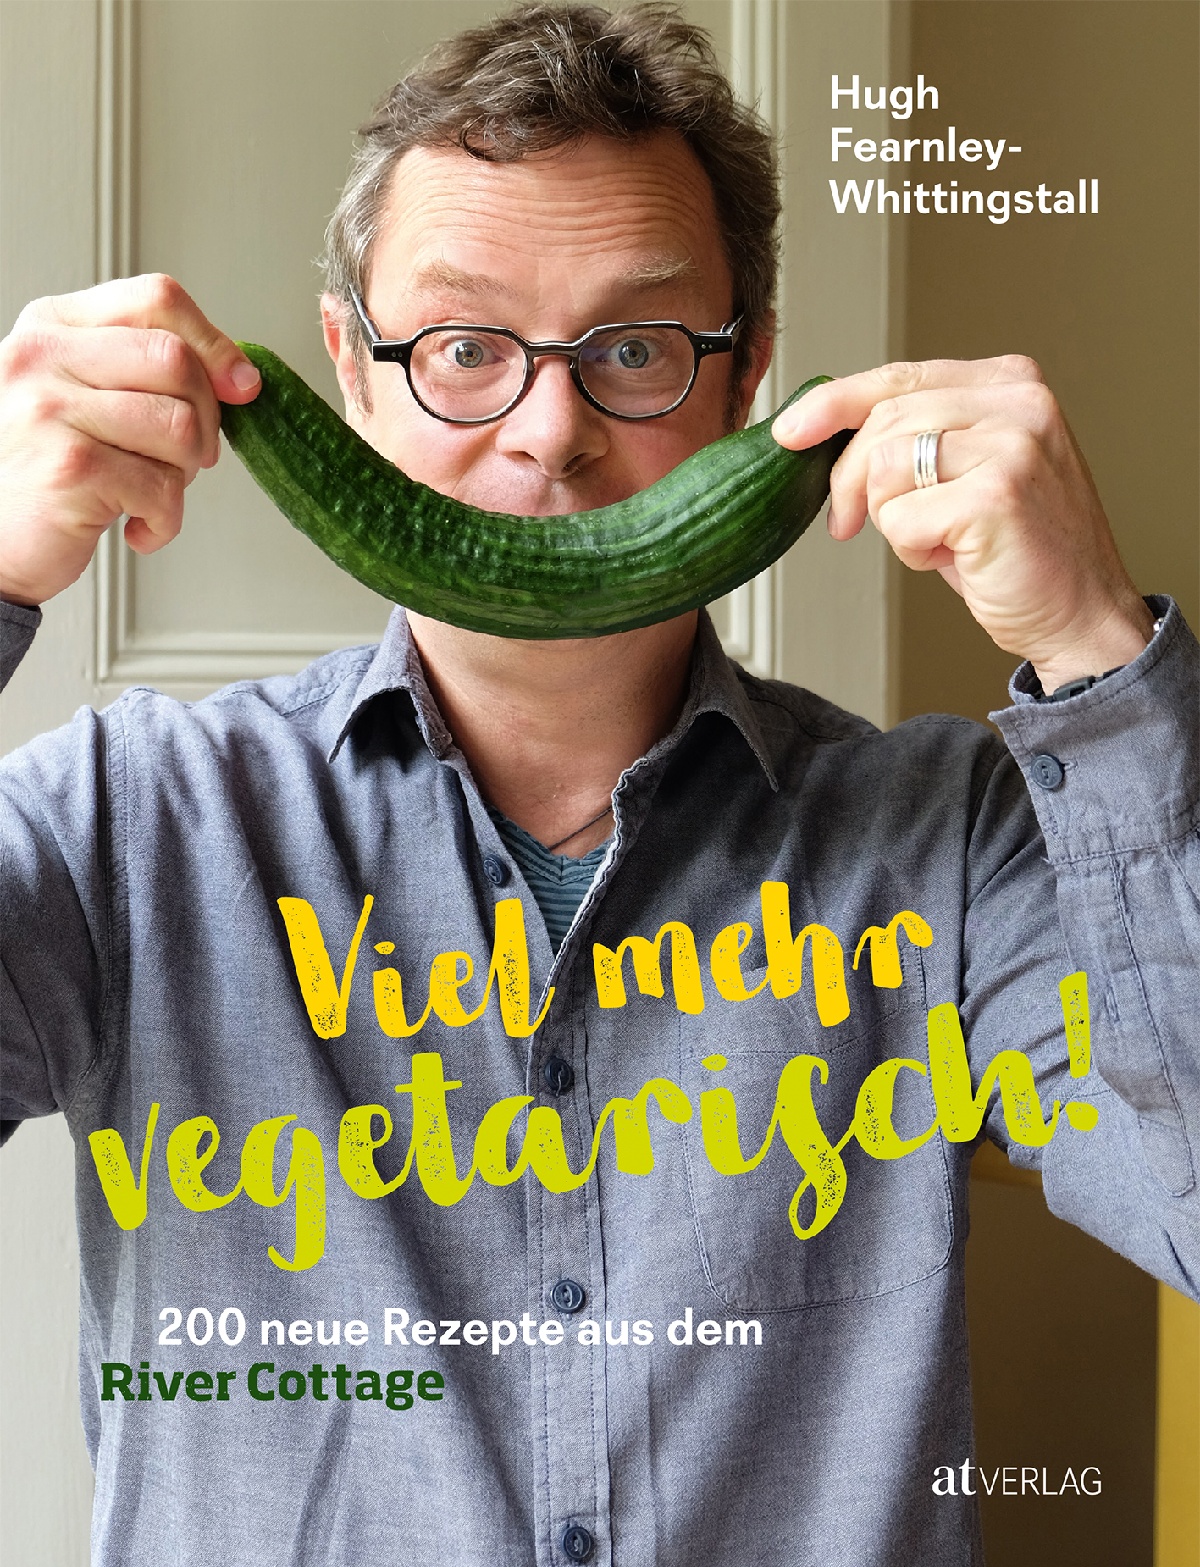 Hugh Fearnley-Whittingstall, Viel mehr vegetarisch!